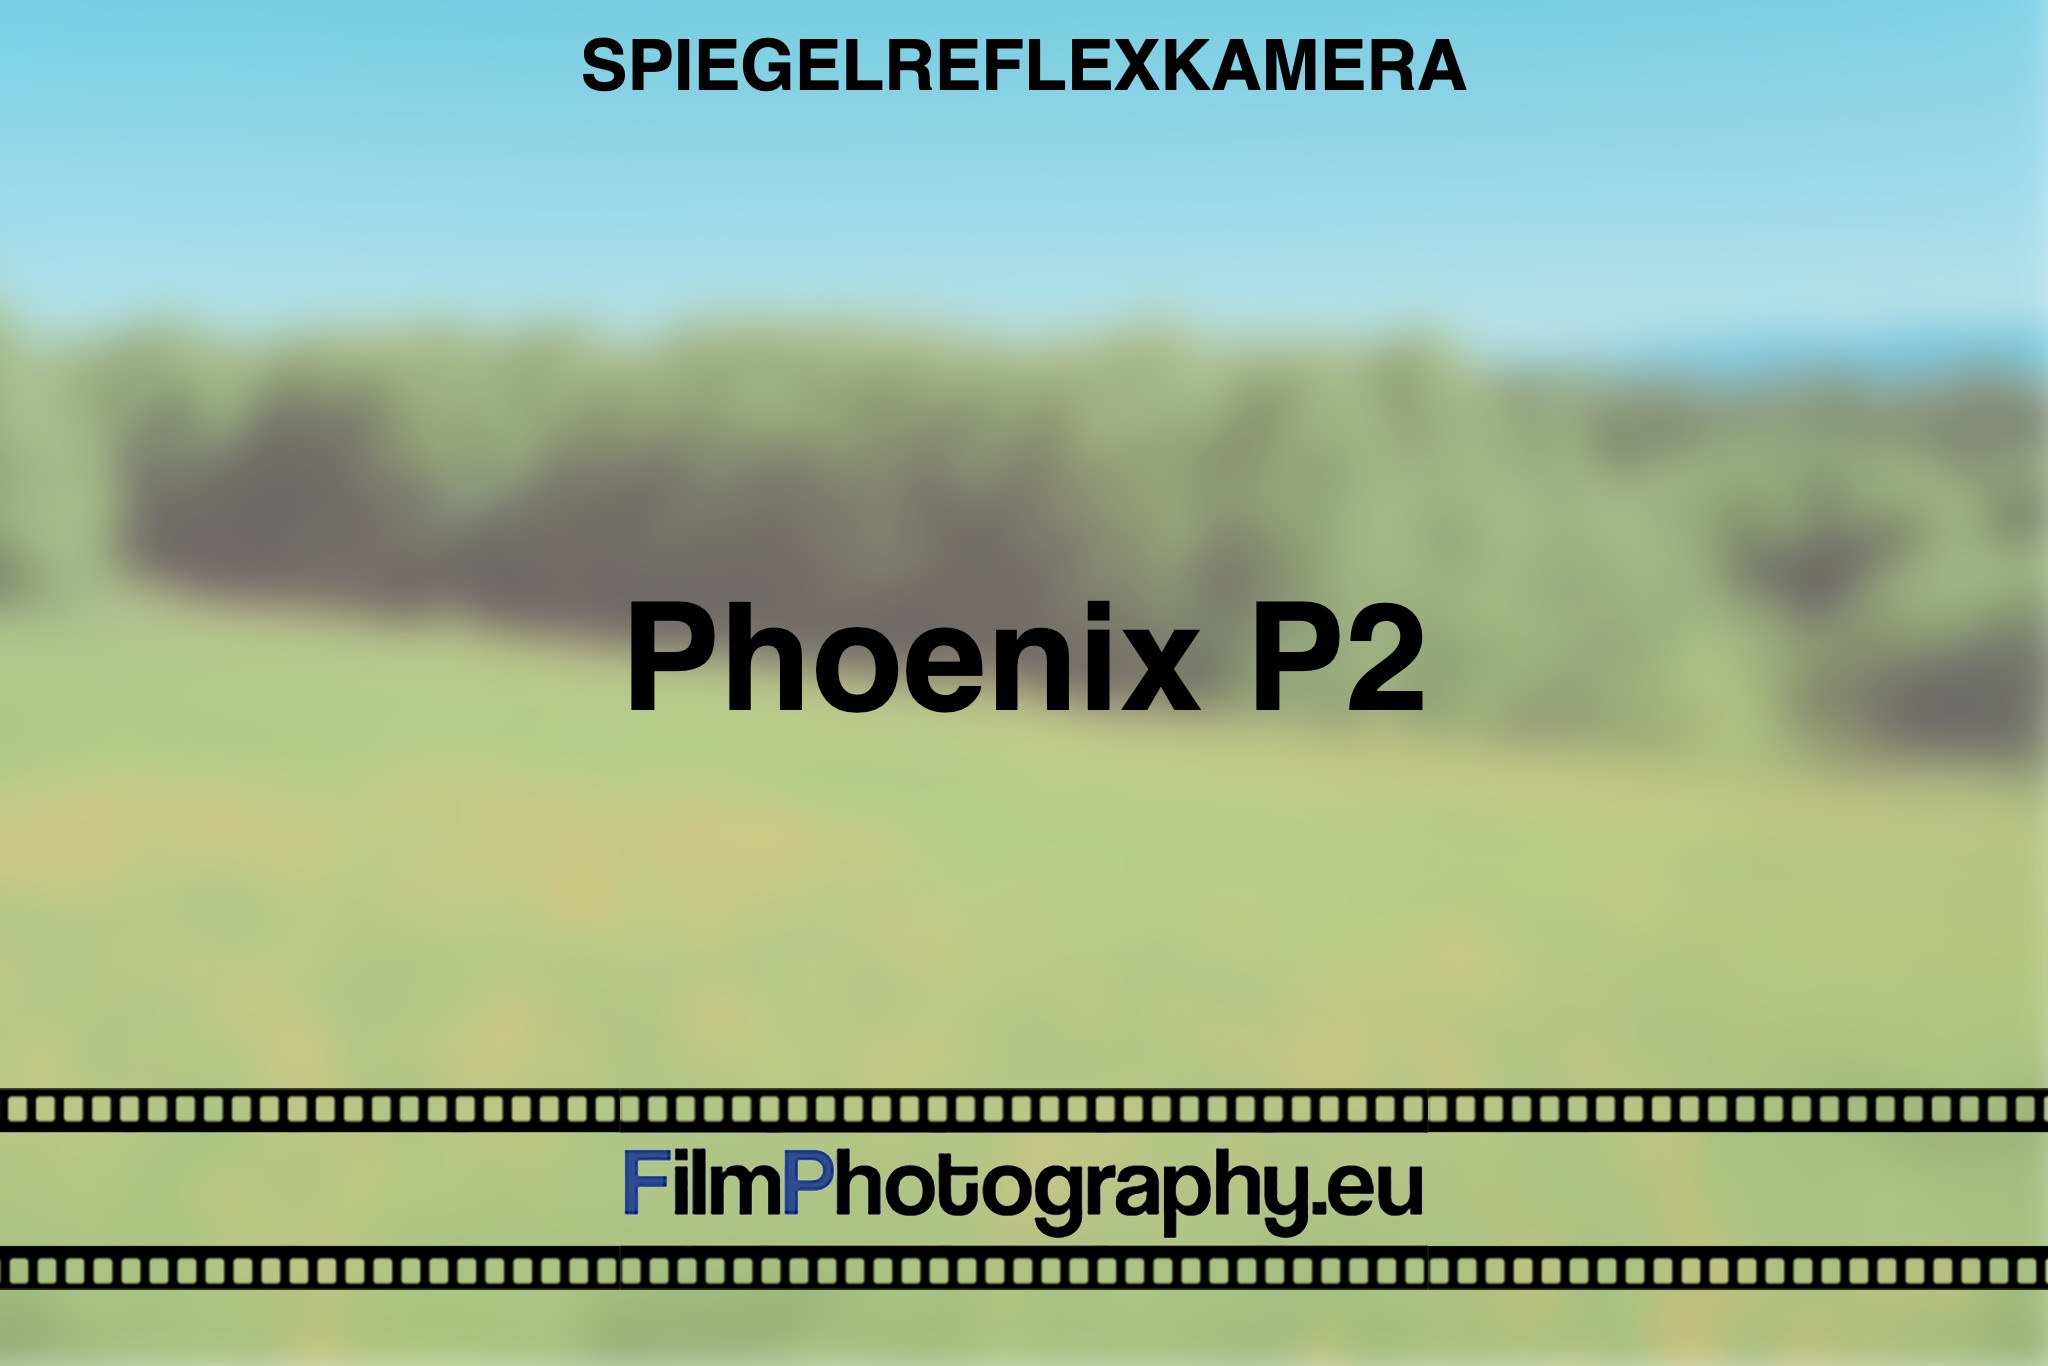 phoenix-p2-spiegelreflexkamera-bnv